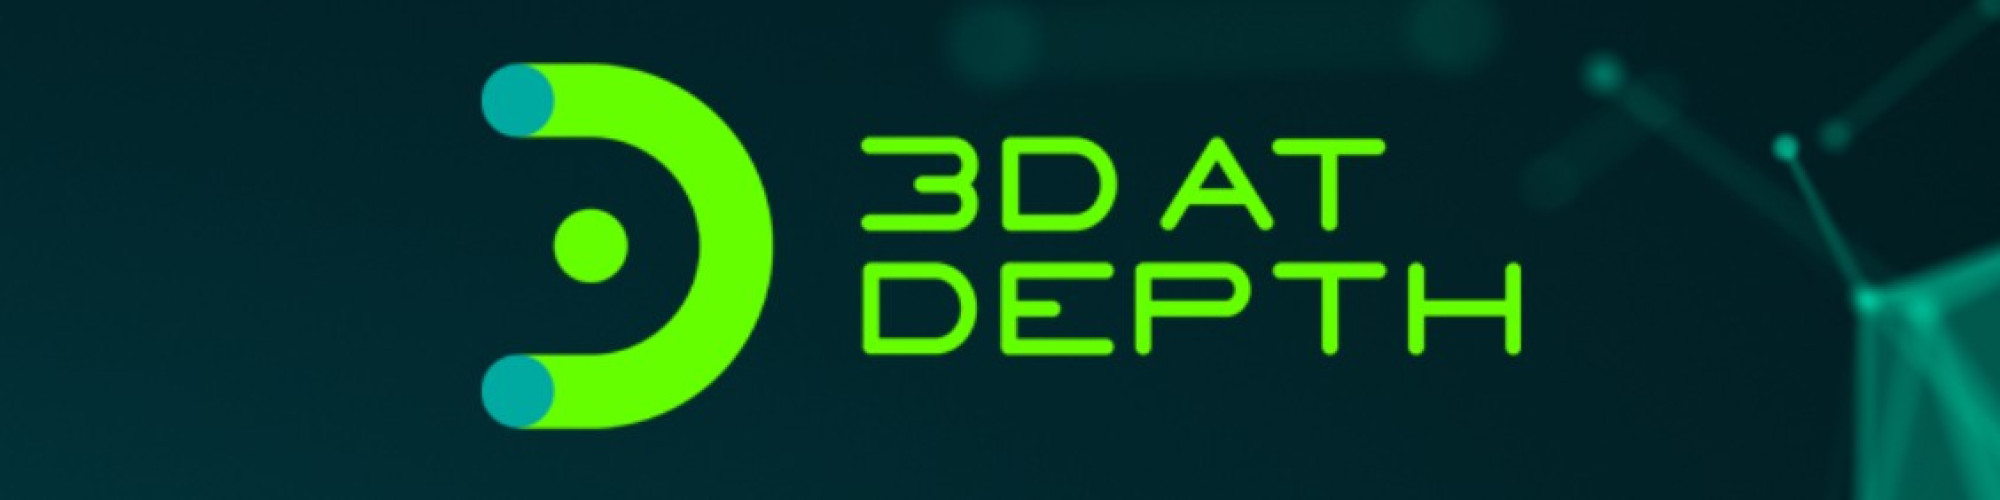 3D At Depth